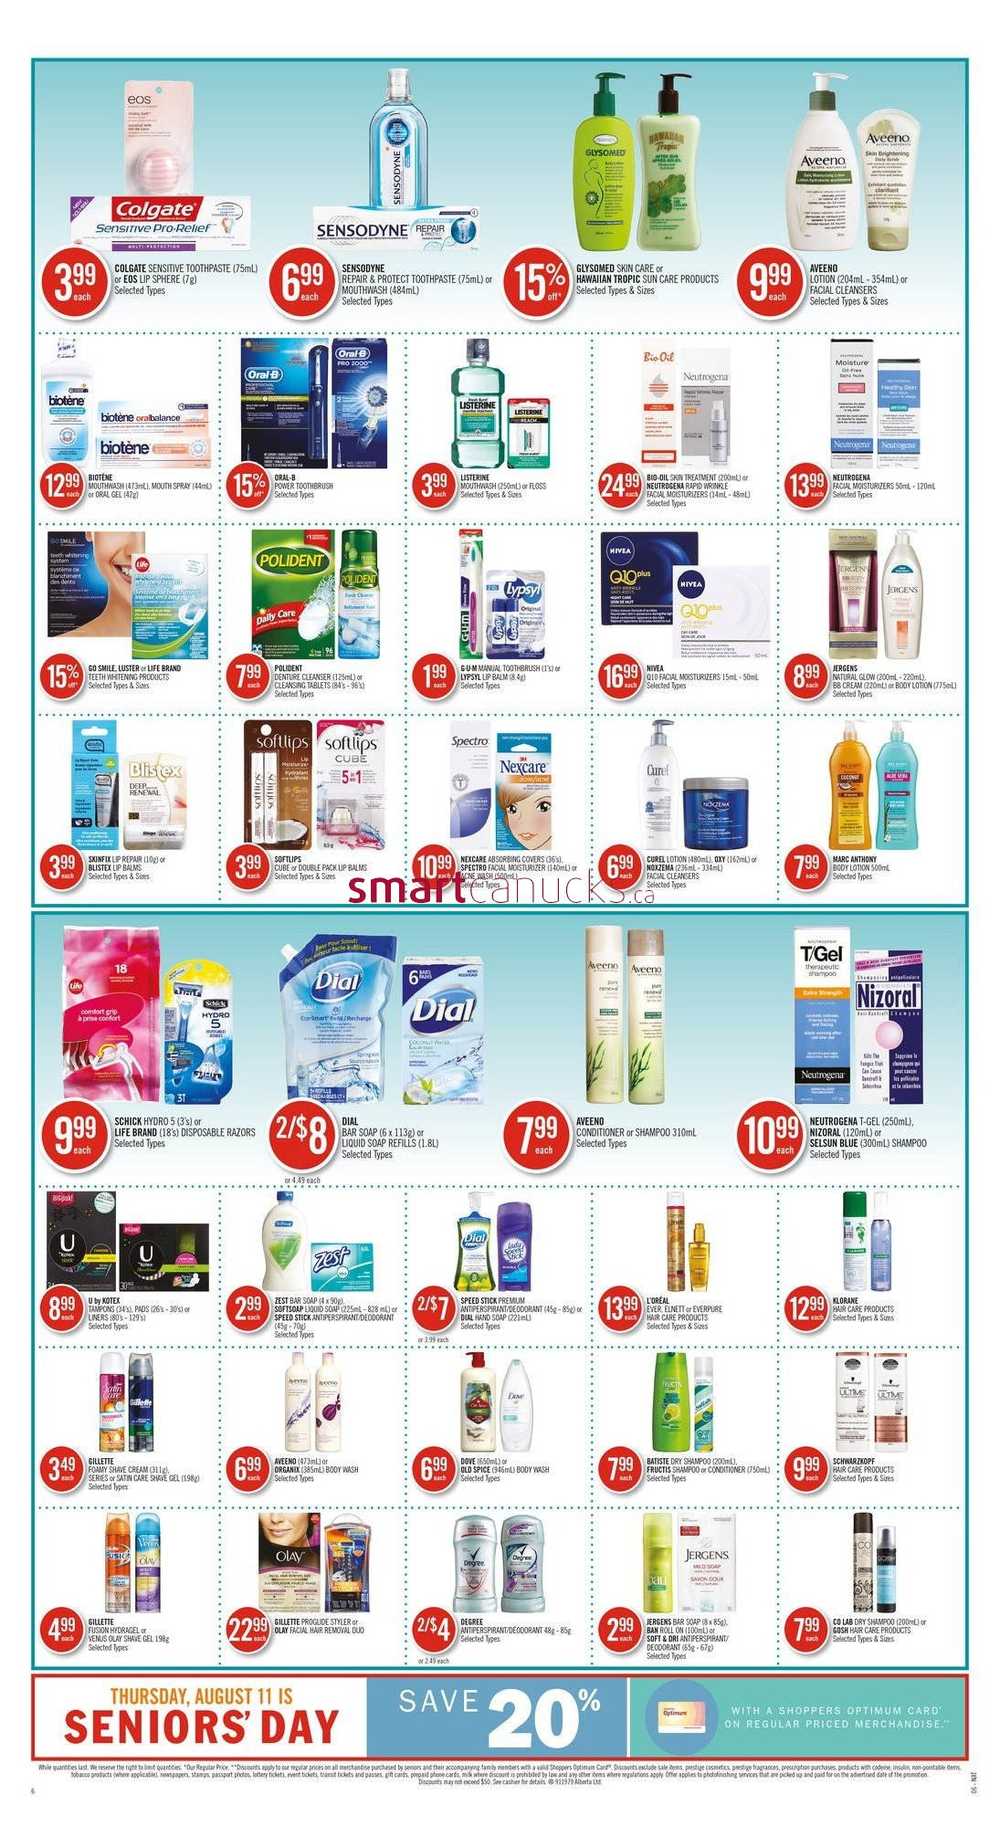 SPECTRO Skin Cleanser, Shoppers Drug Mart deals this week, Shoppers Drug  Mart flyer